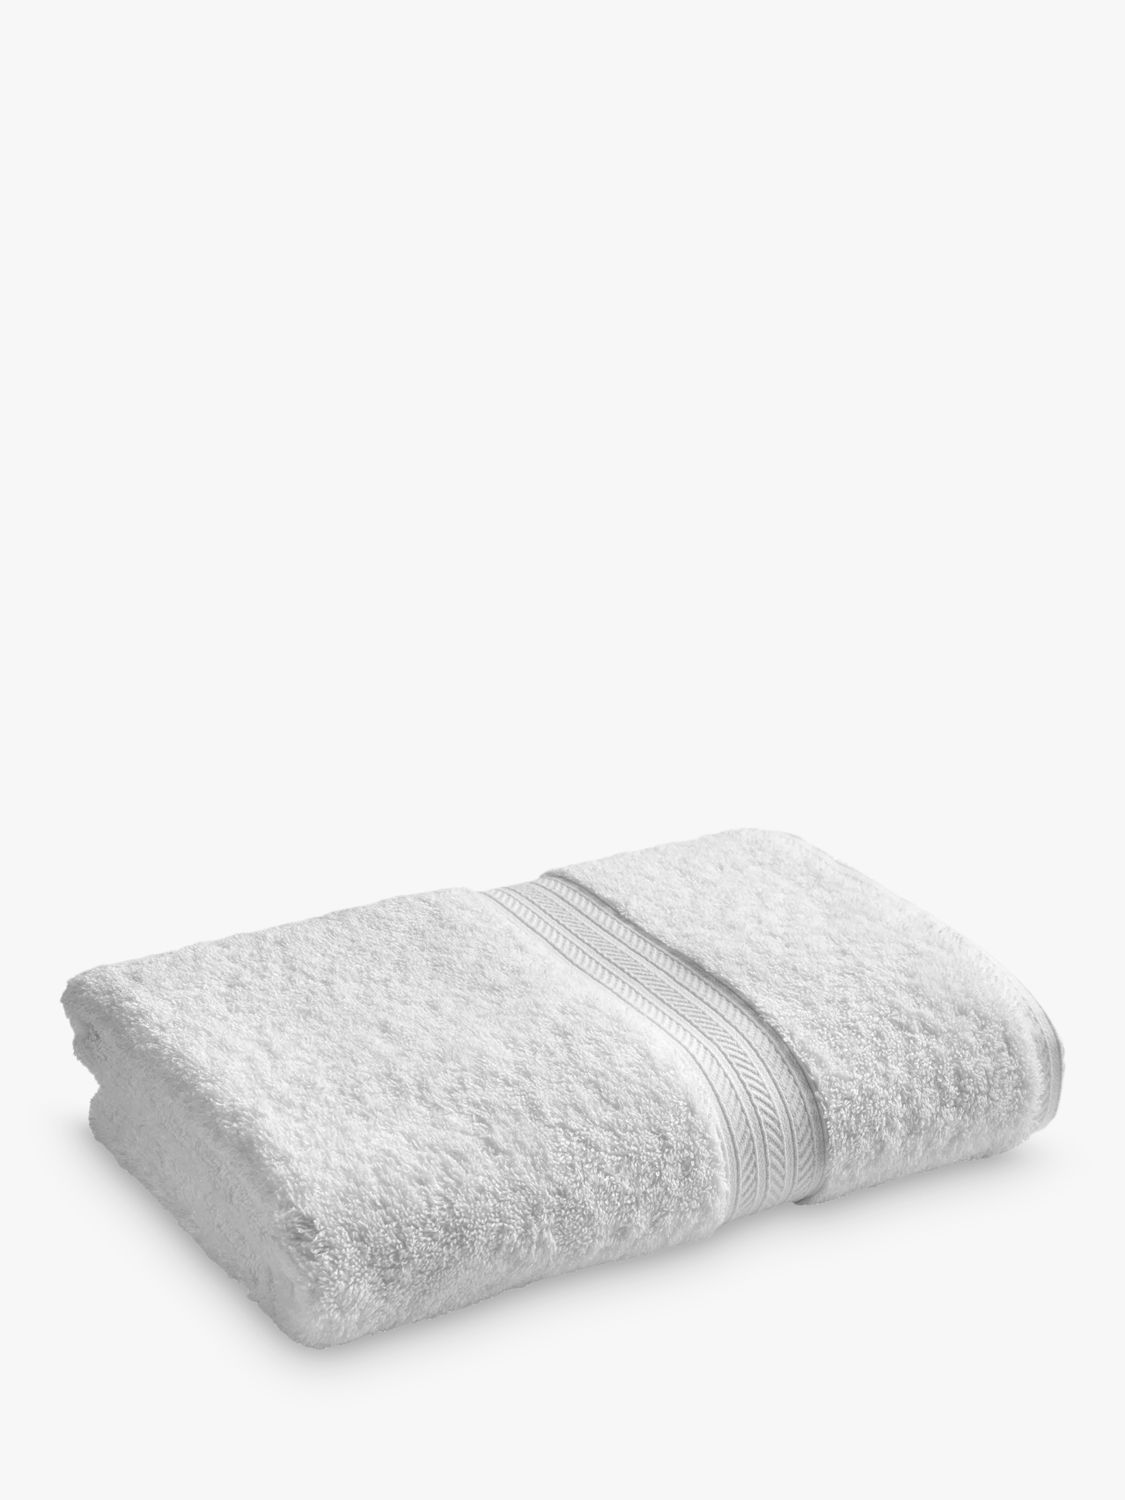 Christy Renaissance Bath Towel Collection